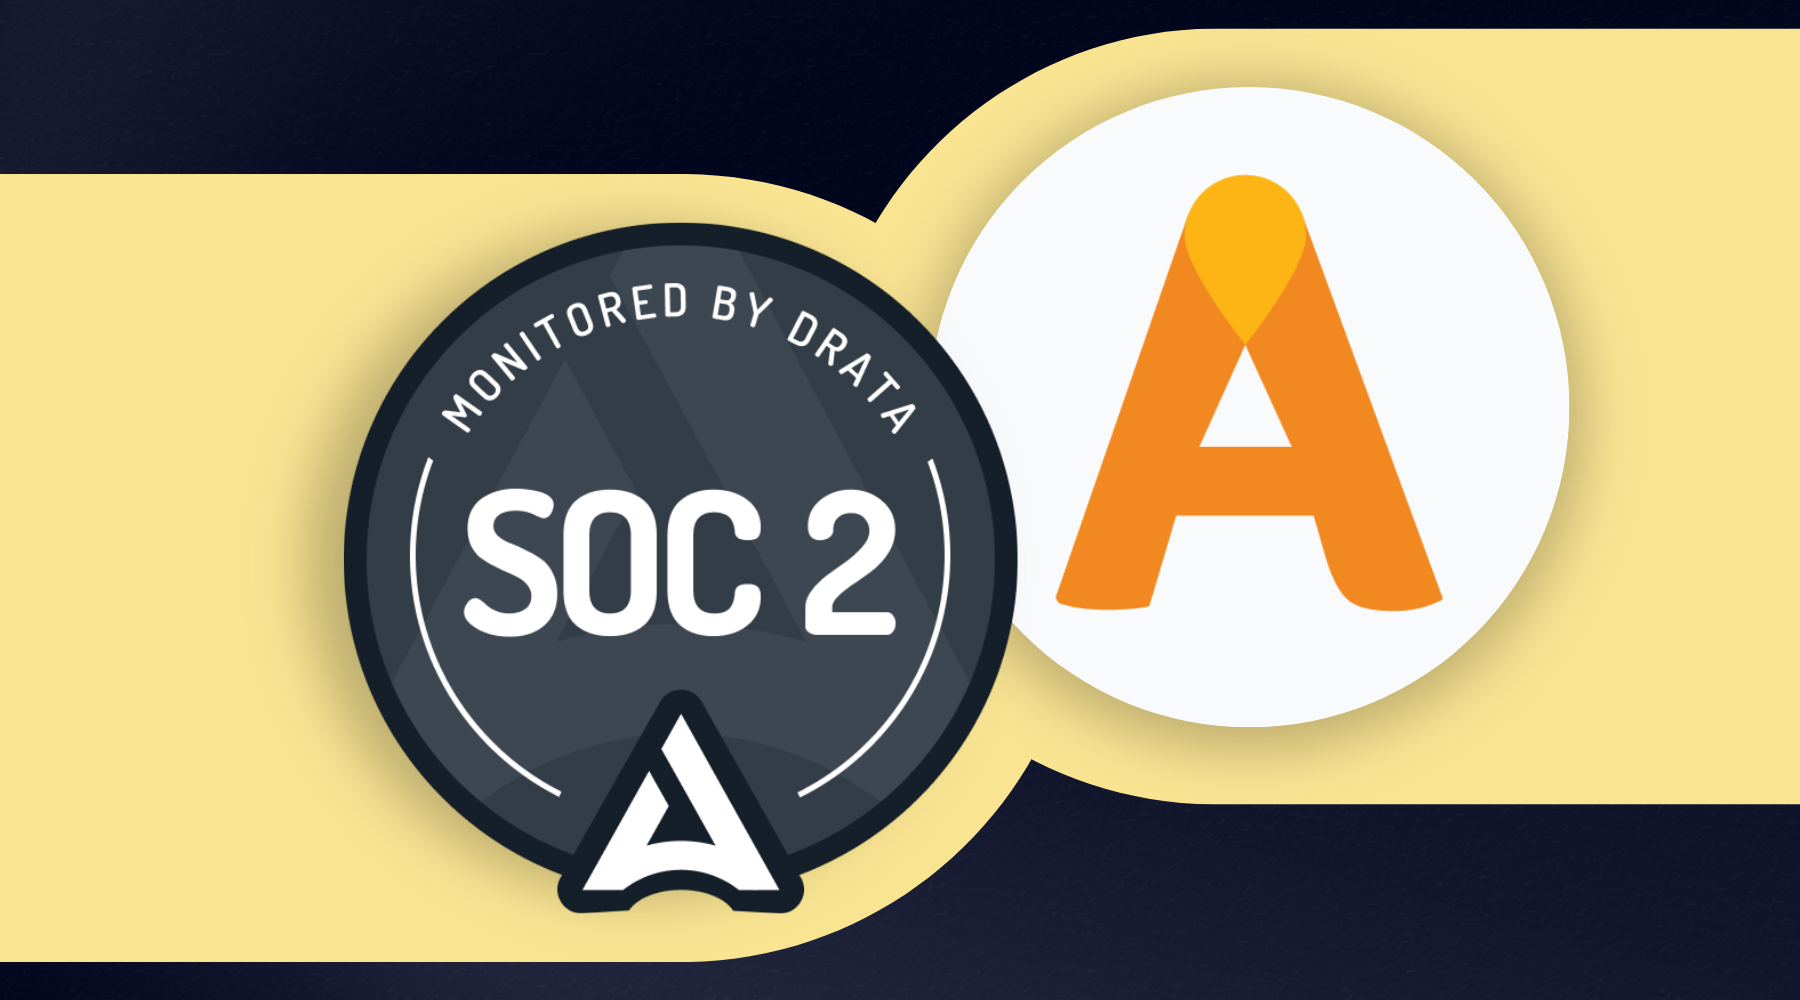 SOC2 and AstrumU logos